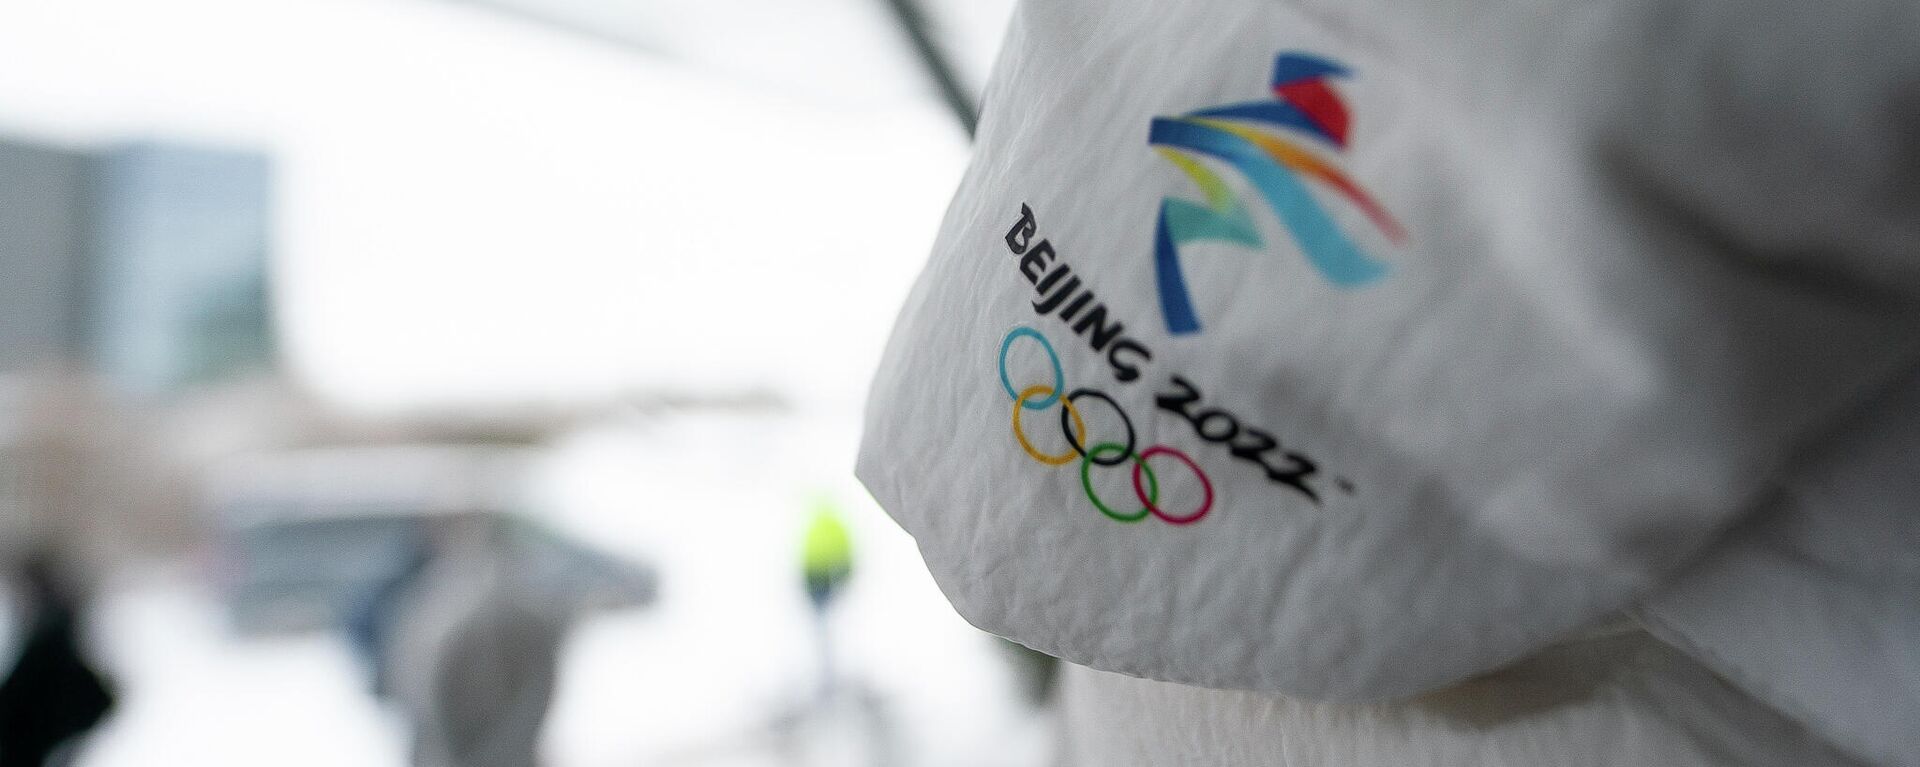 Вторая группа латвийских спортсменов отправилась на Олимпийские игры в Пекин - Sputnik Латвия, 1920, 02.02.2022